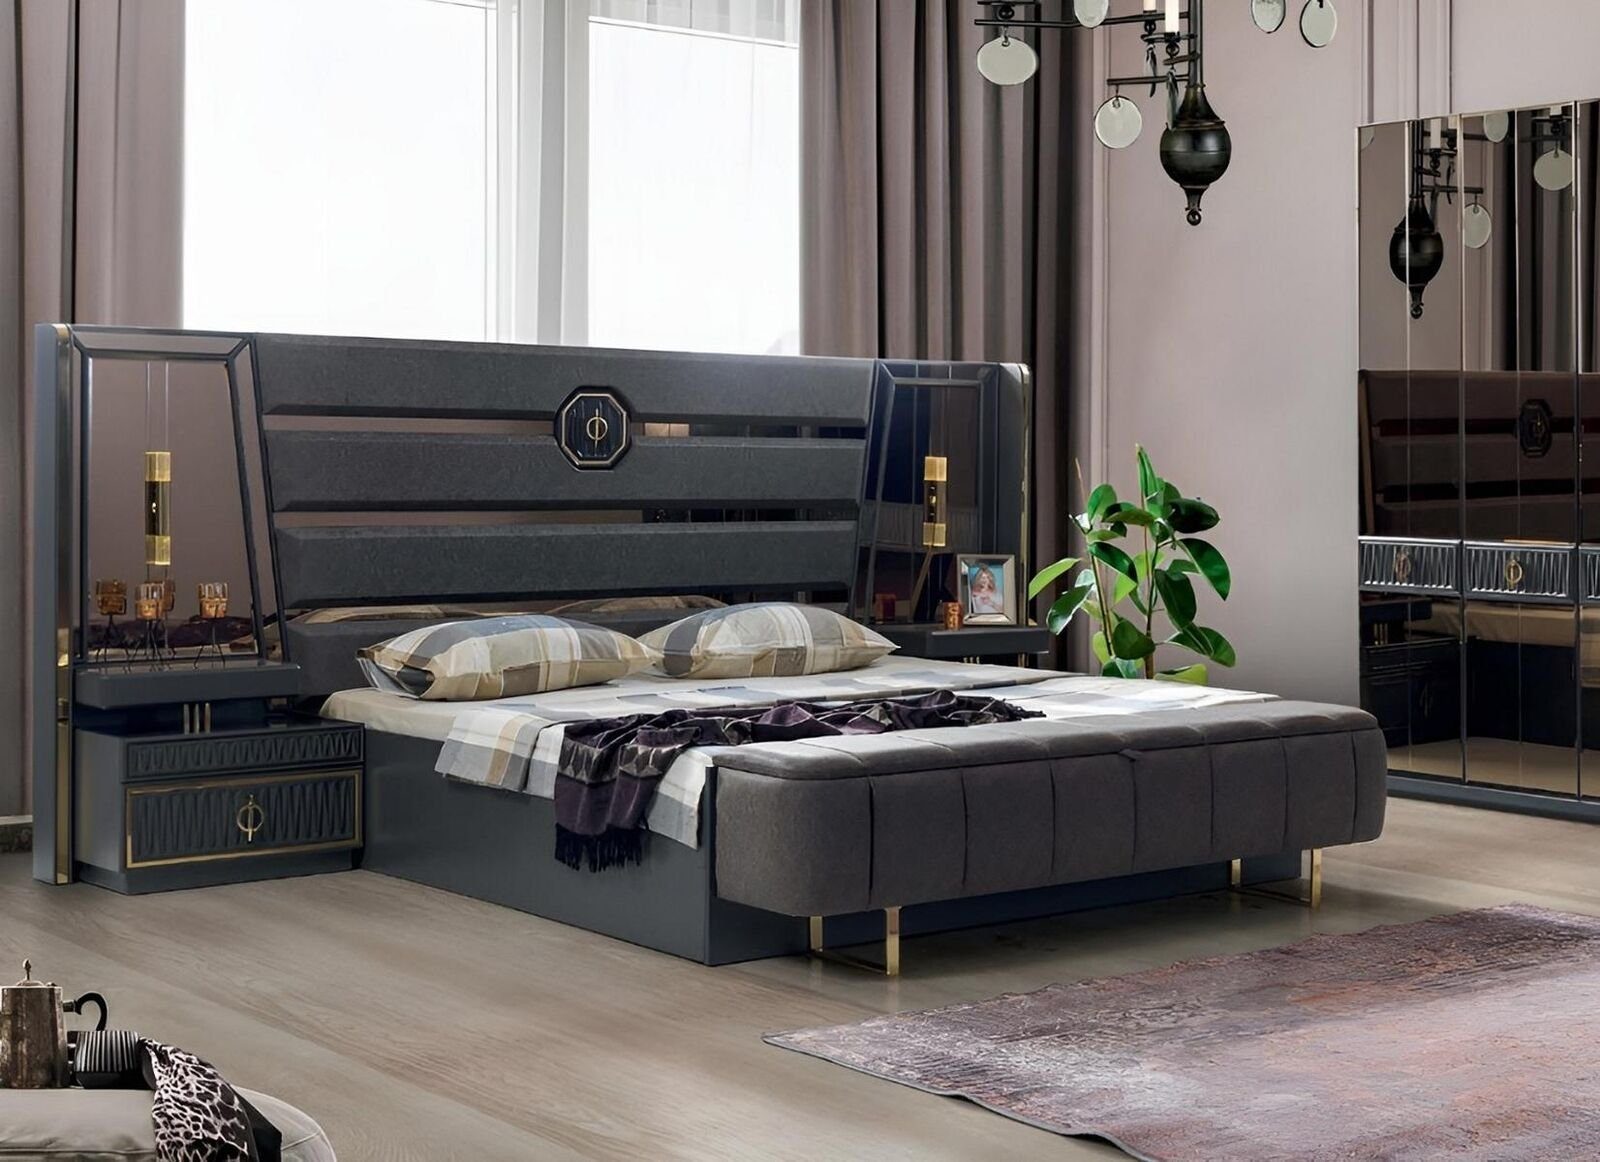 JVmoebel Schlafzimmer-Set Schlafzimmer Set Bett Luxus 2x Nachttische Doppel Bett Designer Möbel, (Bett / 2x Nachttische), Made In Europe